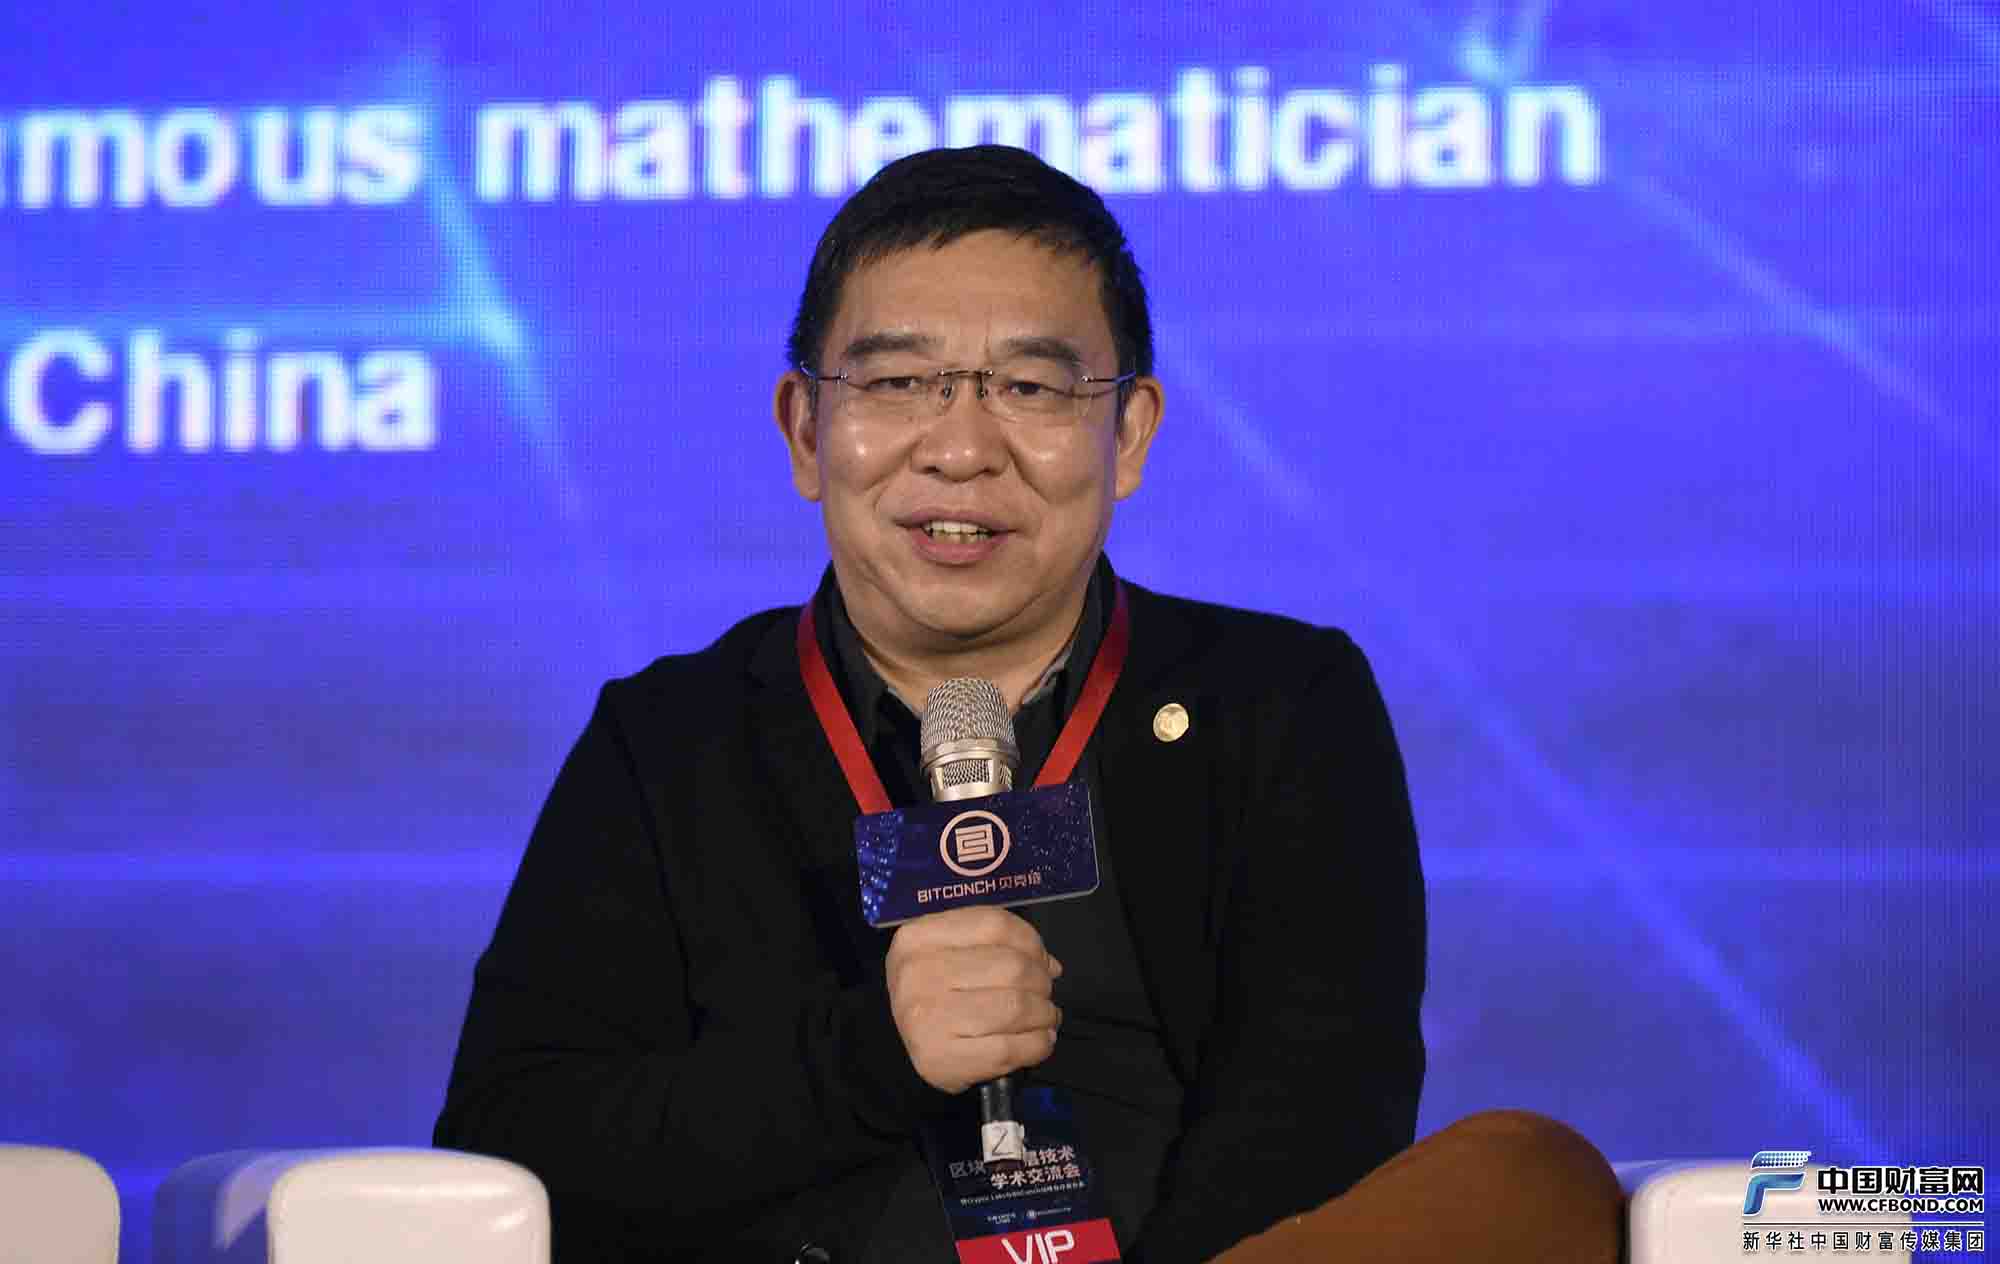 上海中科计算研究所所长孔华威教授